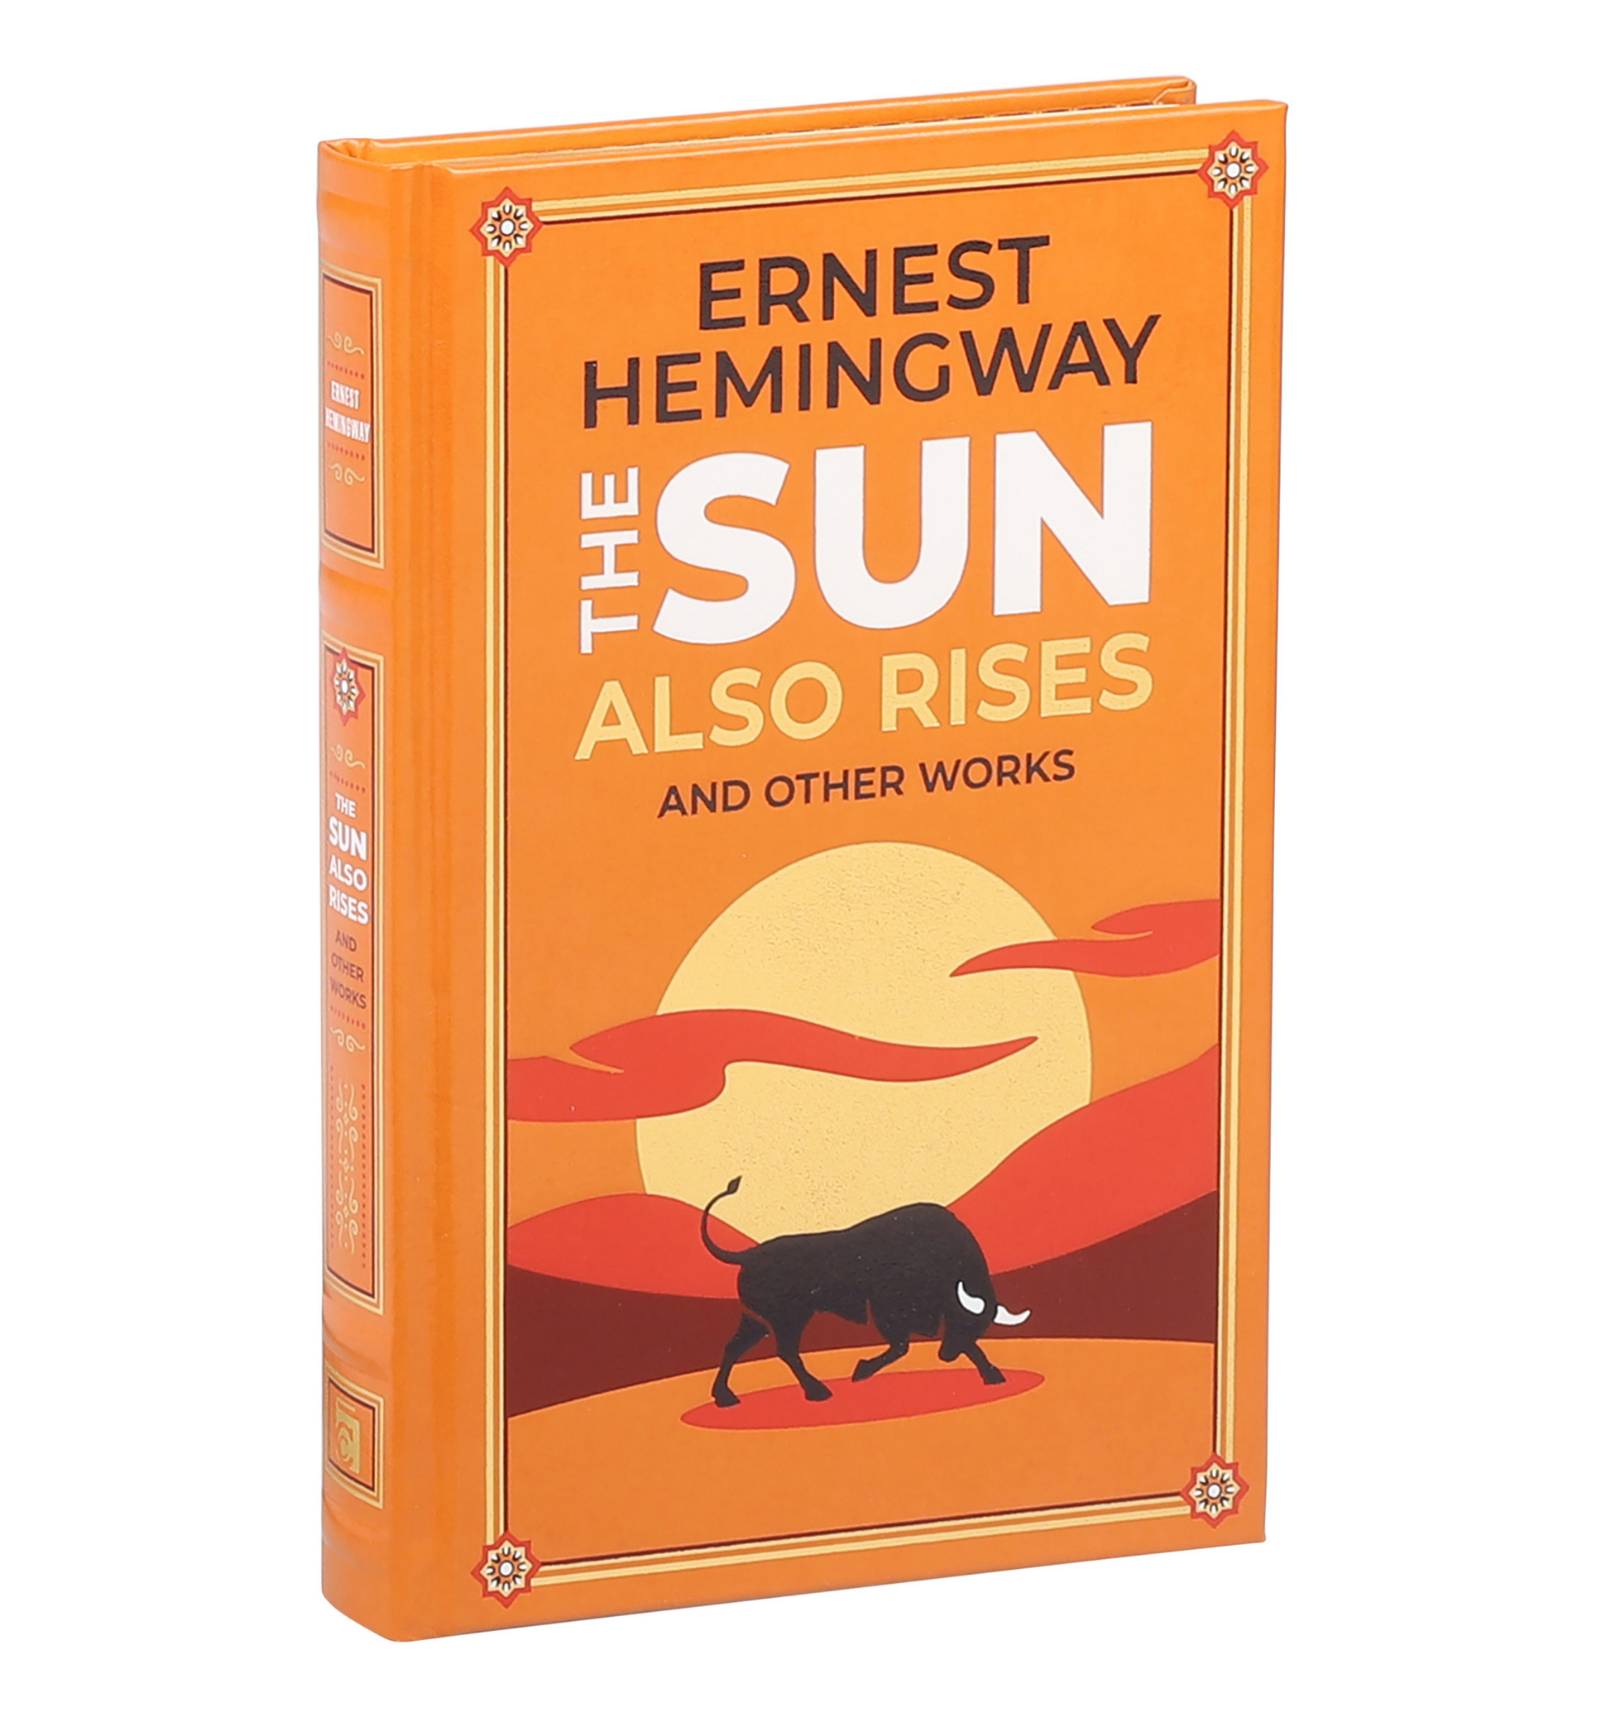 The Sun Rises Hemingway